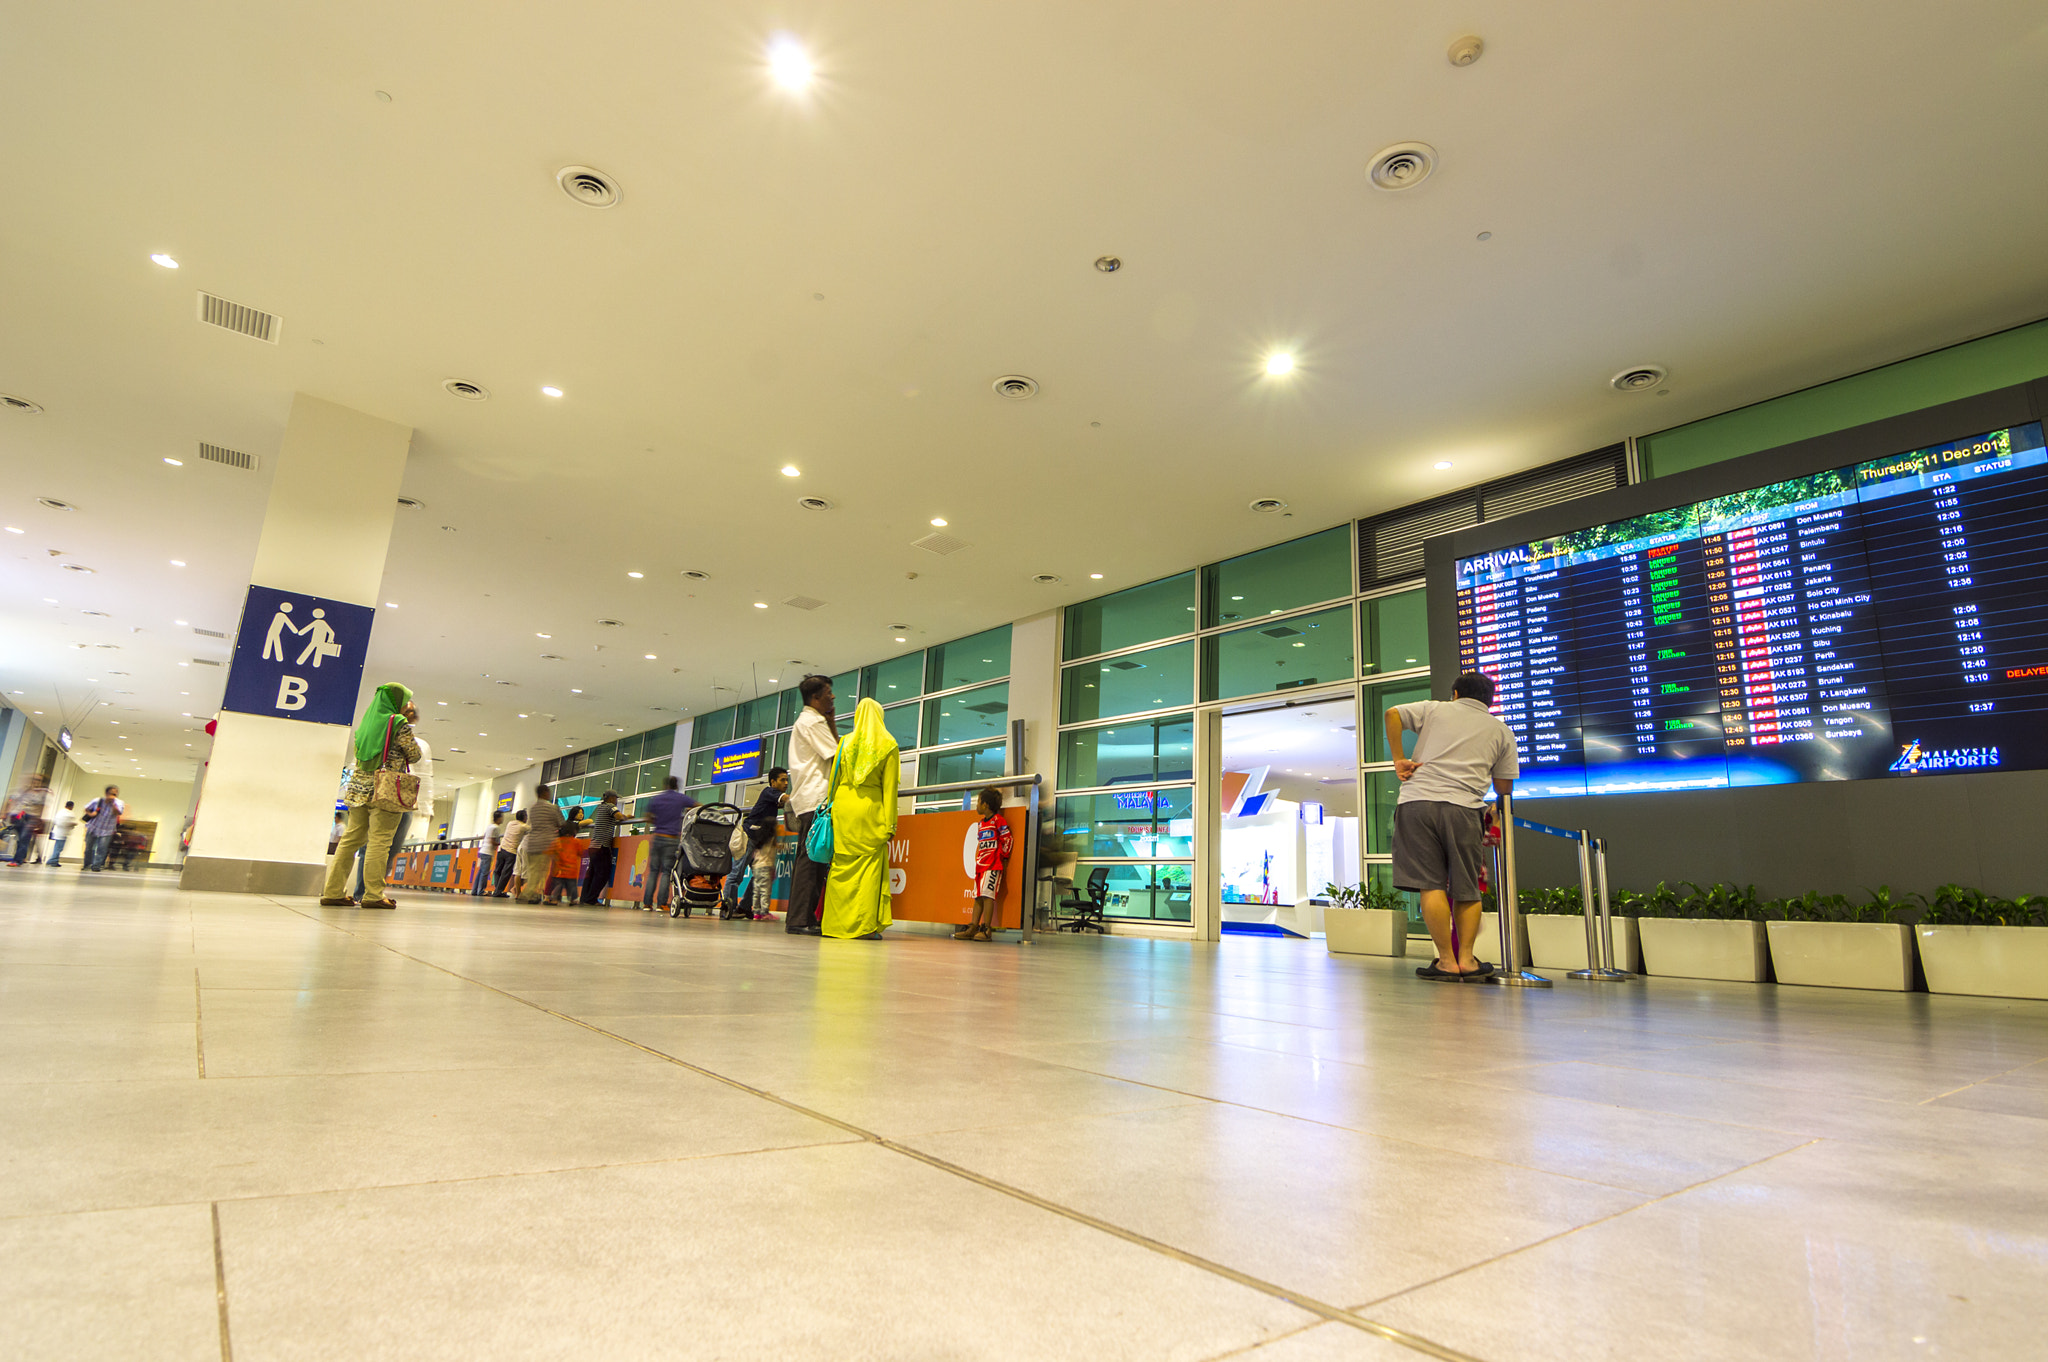 KUALA LUMPUR, MALAYSIA - DECEMBER 11, 2014 : View of entrance of Kuala Lumpur International Airport.